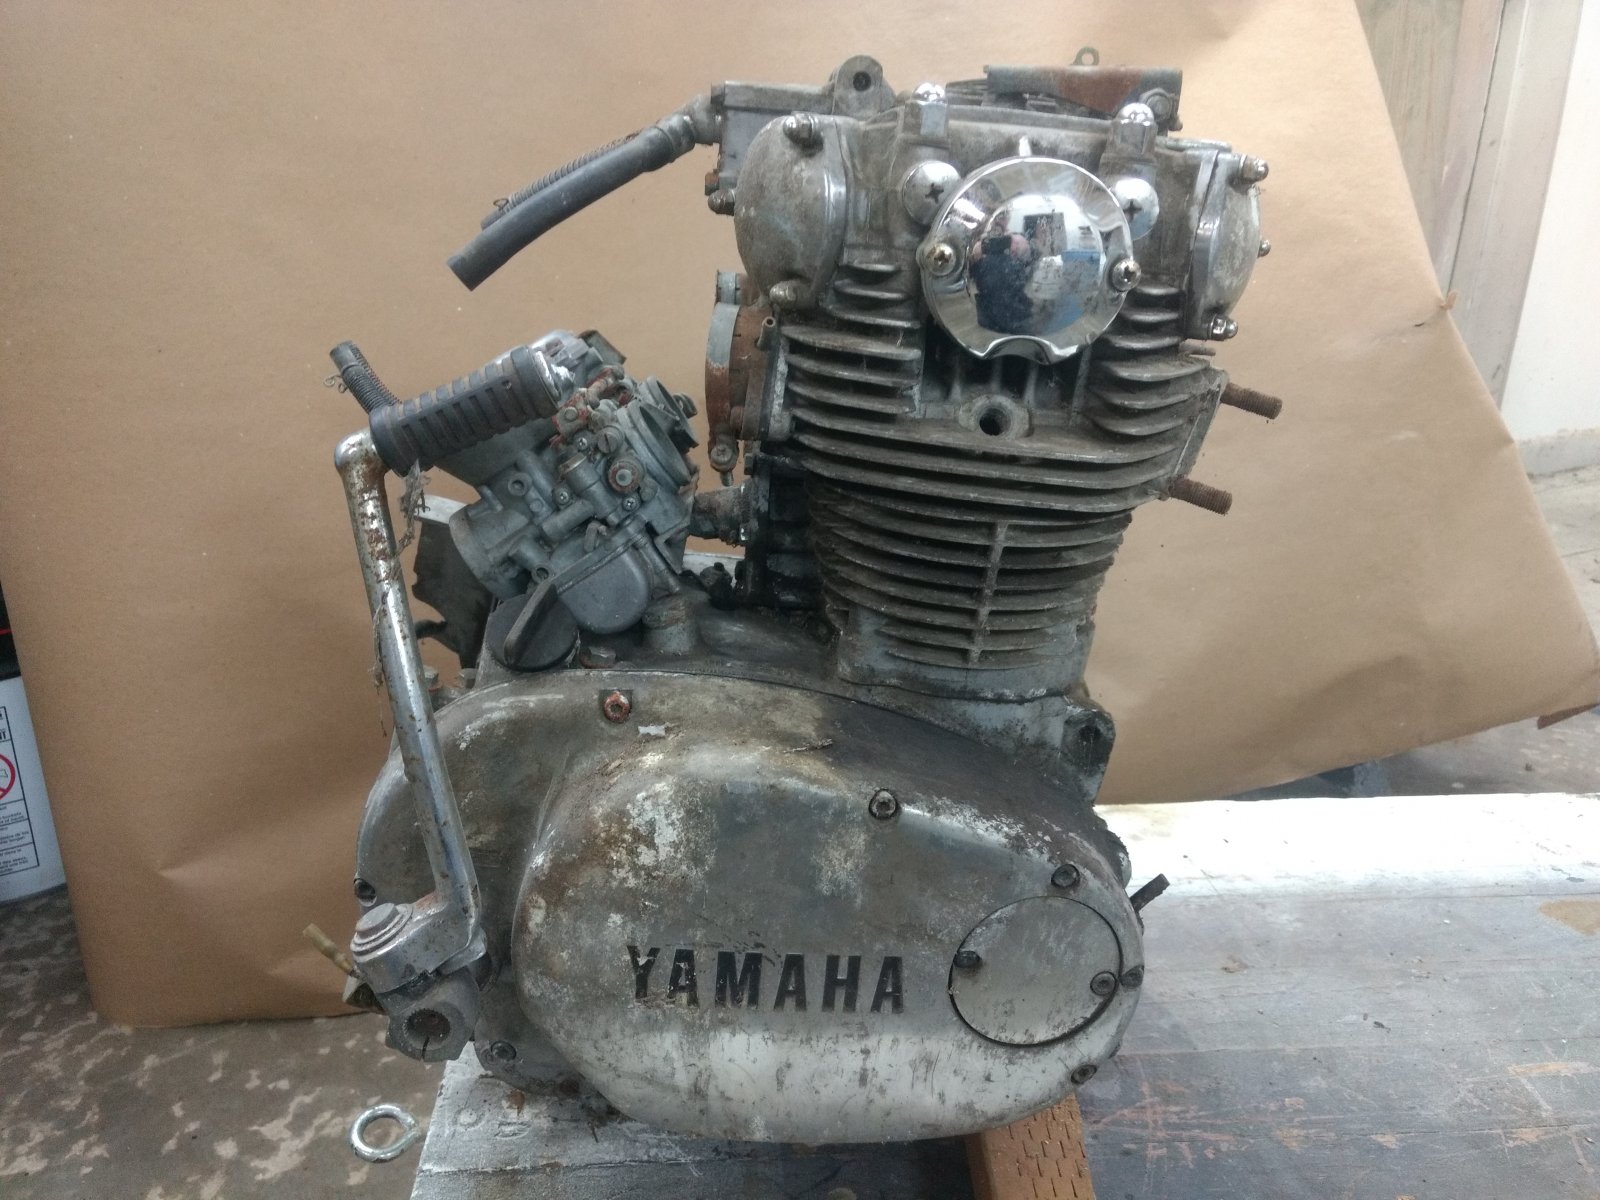 Yamaha 650